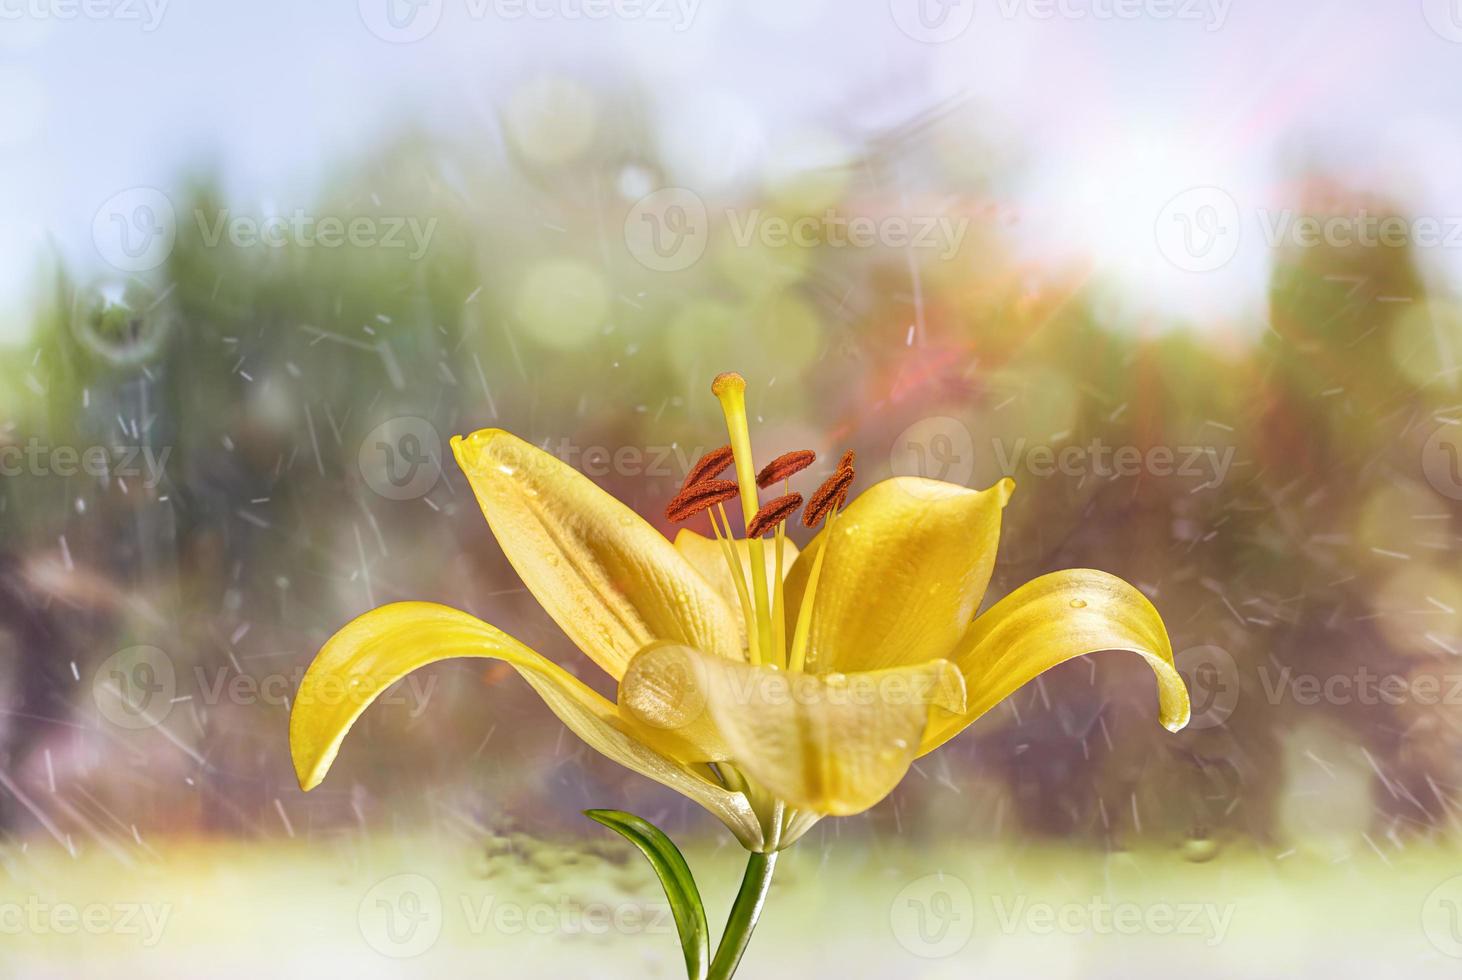 lilja blomma, närbild fotografering. gul lilja blomma textur med droppar vatten. blommig makrofotografering. foto